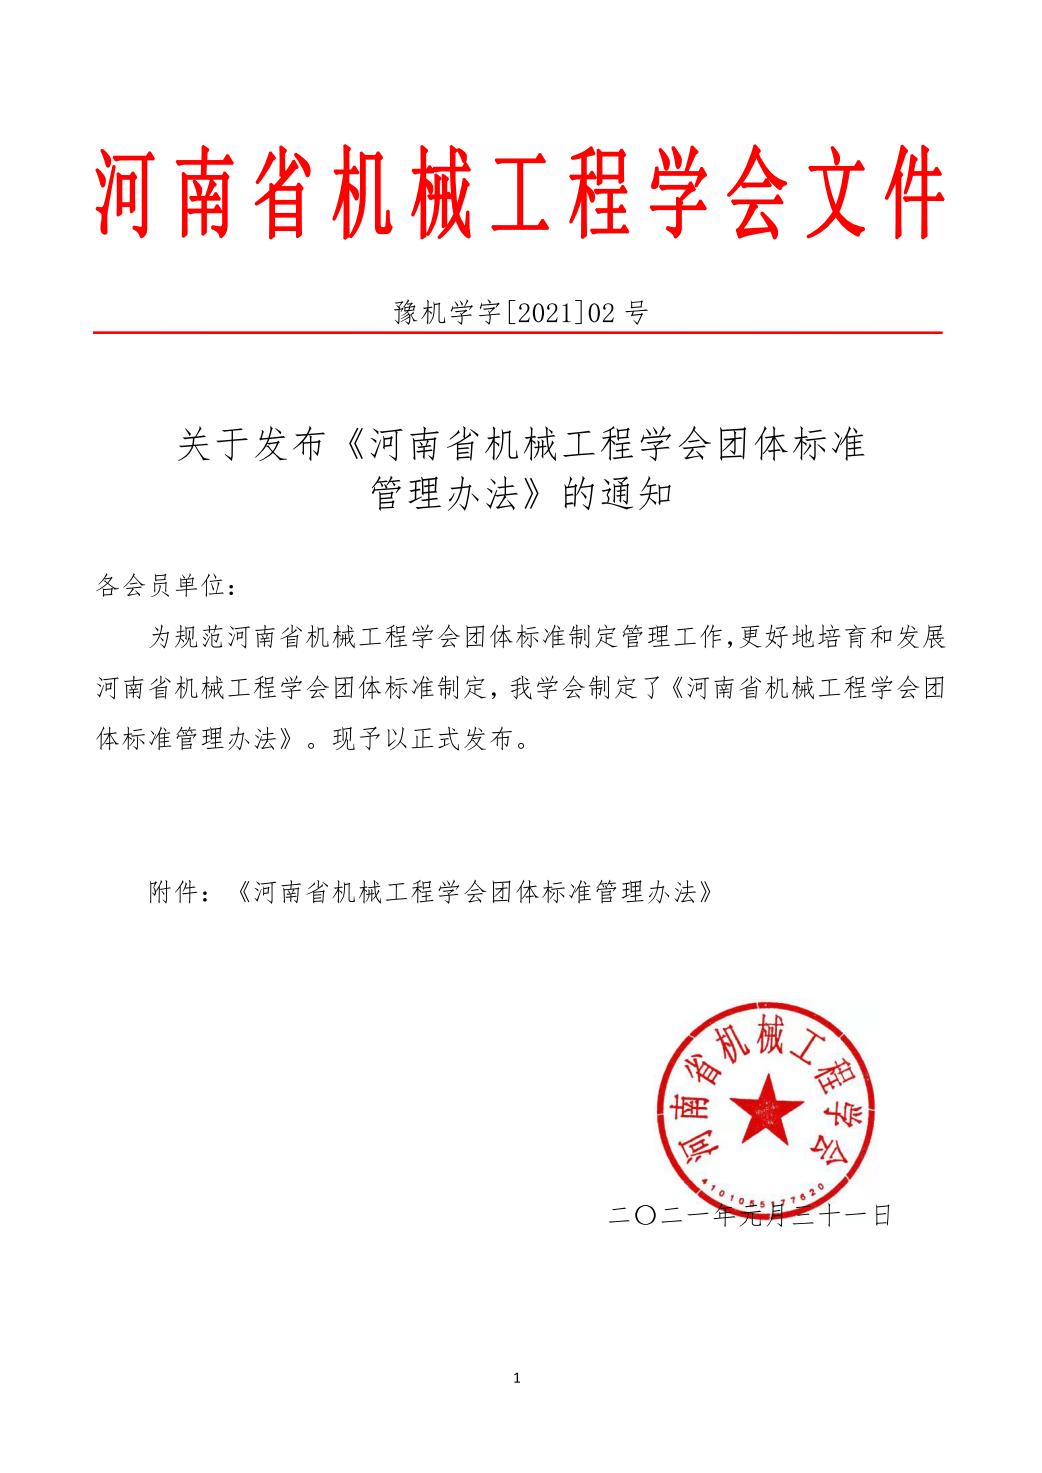 关于发布《河南省机械工程学会团体标准管理办法》的通知